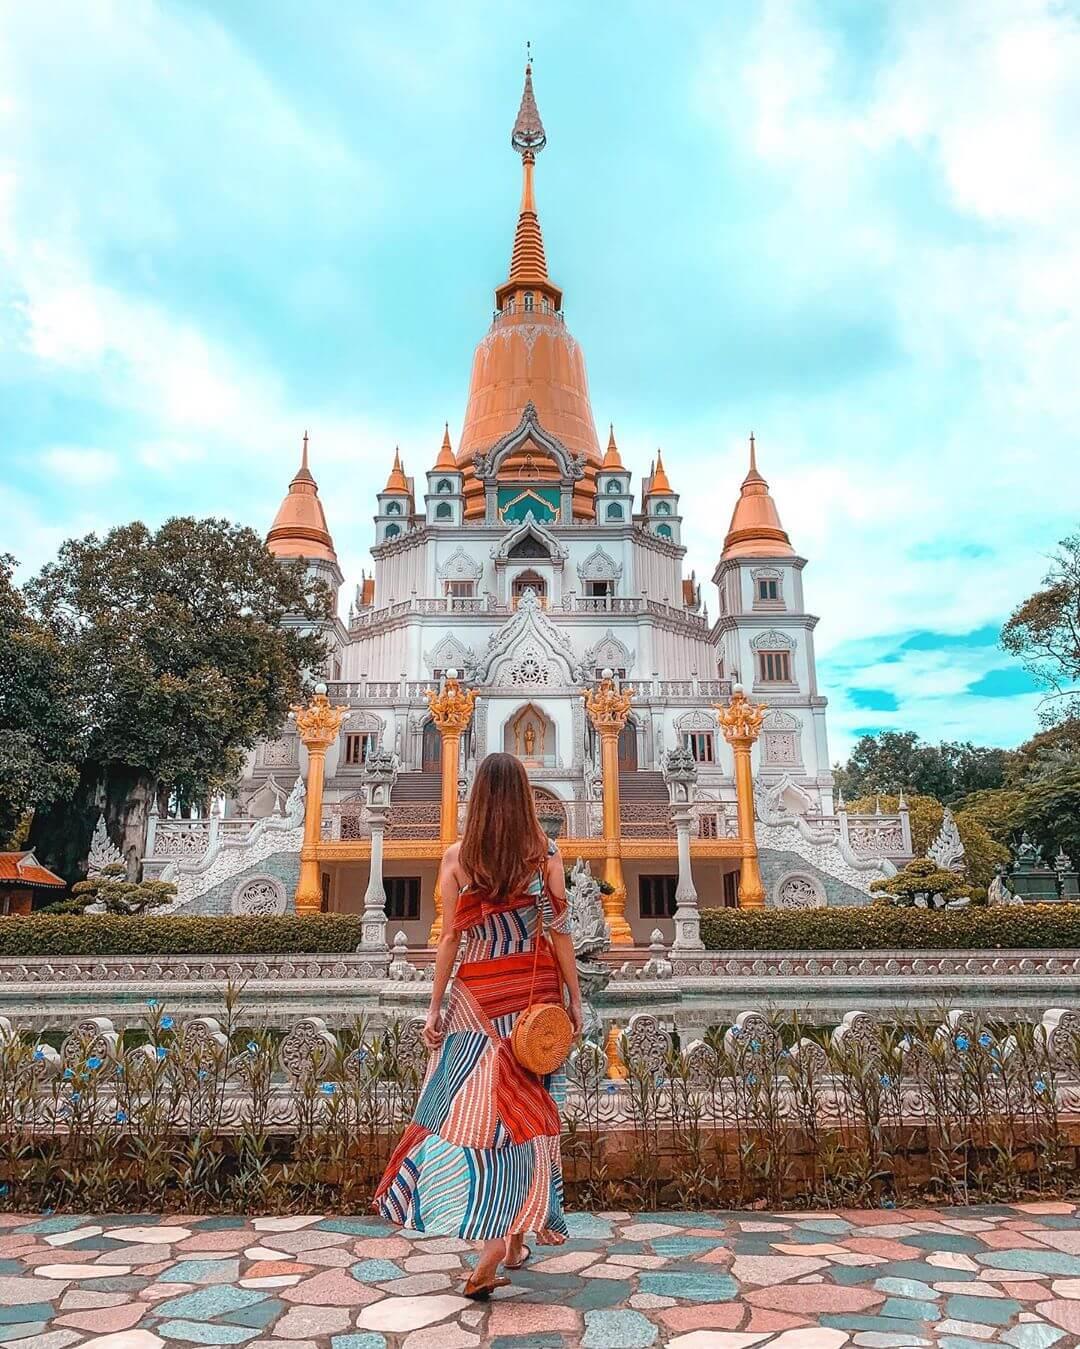 Hãy tới ngay chùa đẹp gần Sài Gòn để cảm nhận sự tĩnh lặng và thanh tịnh. Khung cảnh xung quanh cũng rất đẹp mắt, giúp bạn thư giãn sau những ngày bận rộn.